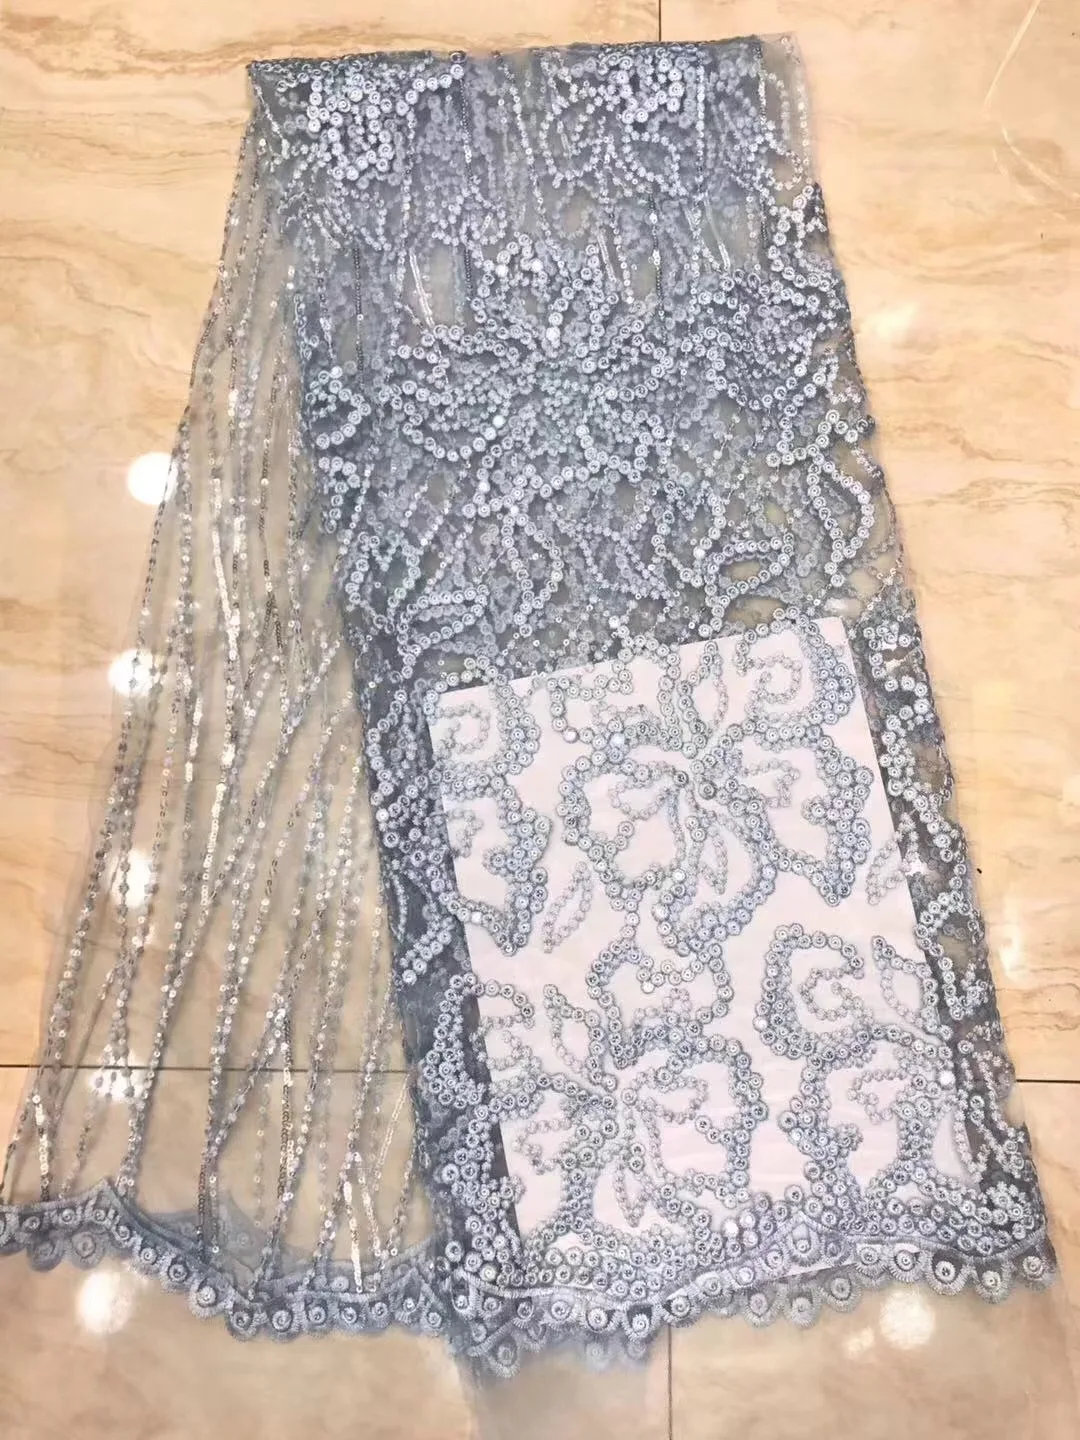 アフリカンレースキラキラ生地ナイジェリアの結婚式パーティードレス用の高品質の刺繍レース生地d92